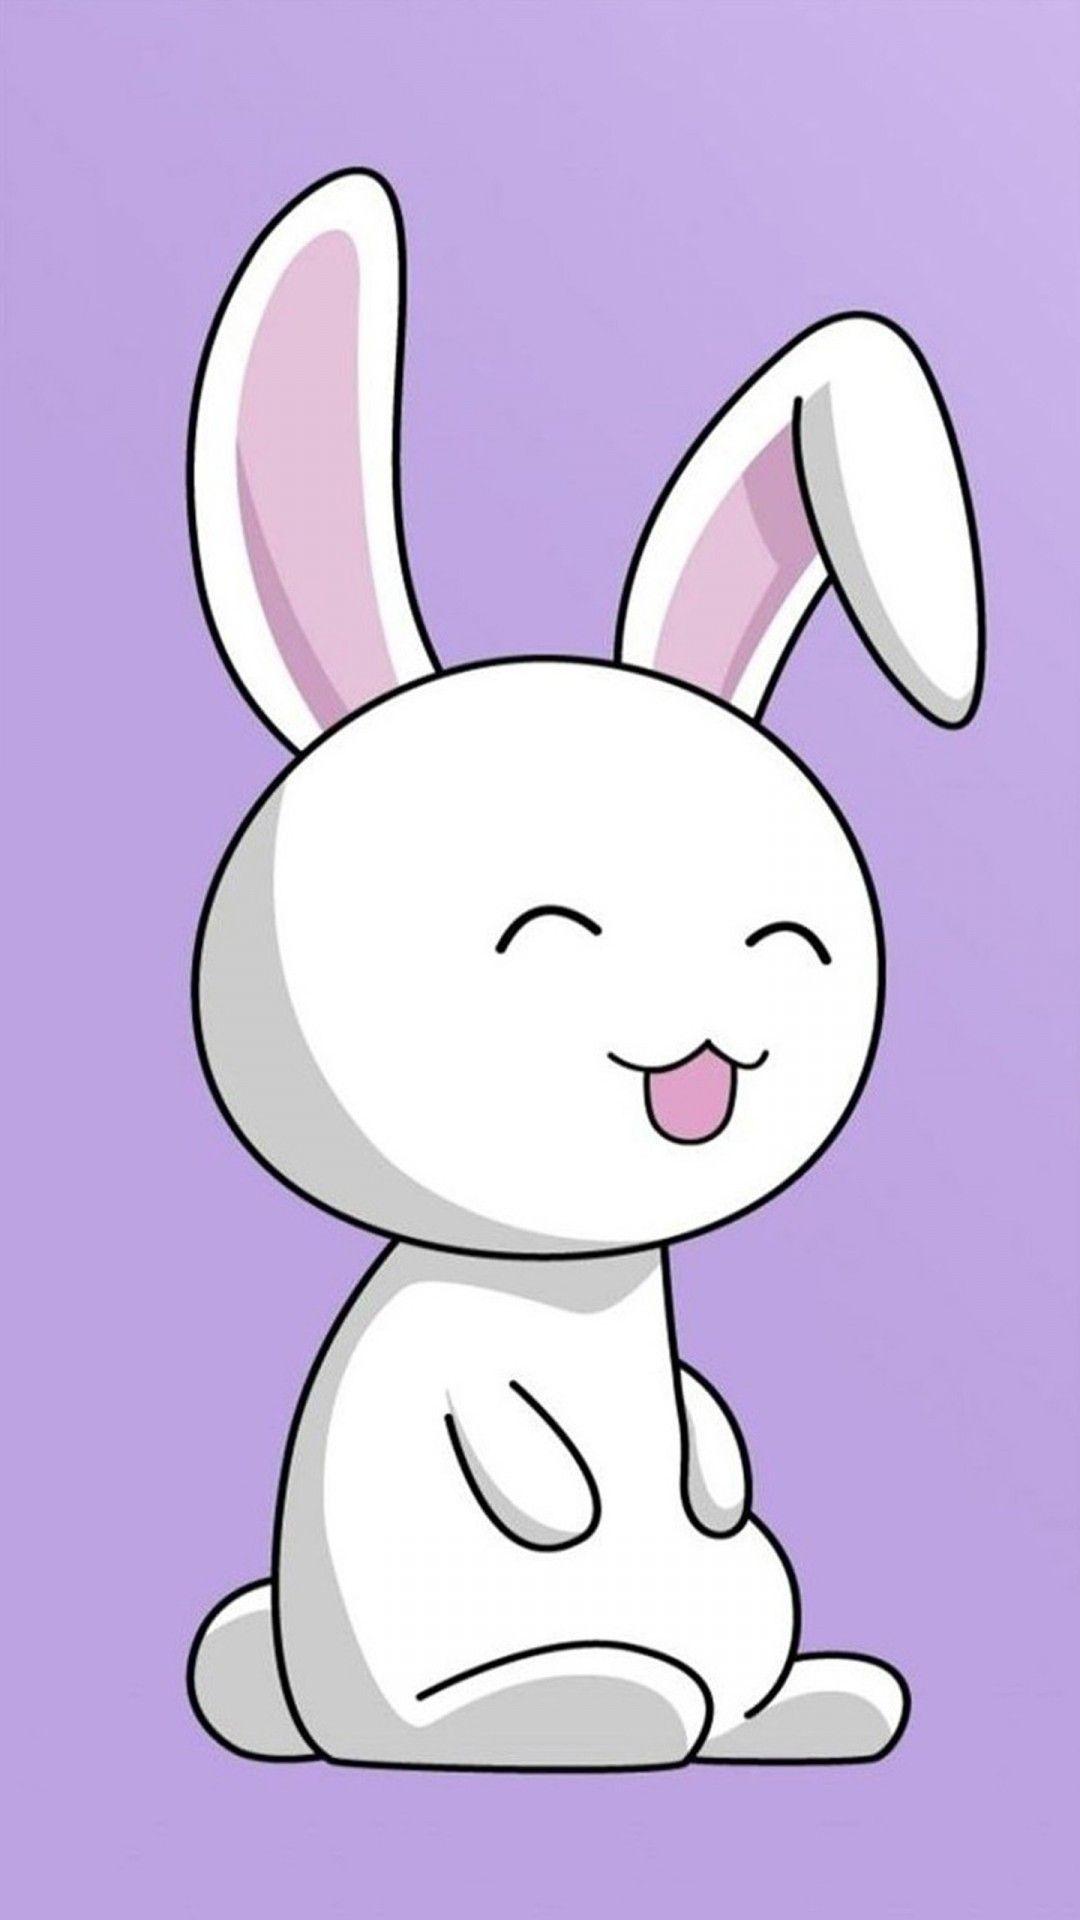 Cute Rabbit Cartoon Wallpaper Hd Cute Cartoon Bunny Wallpapers